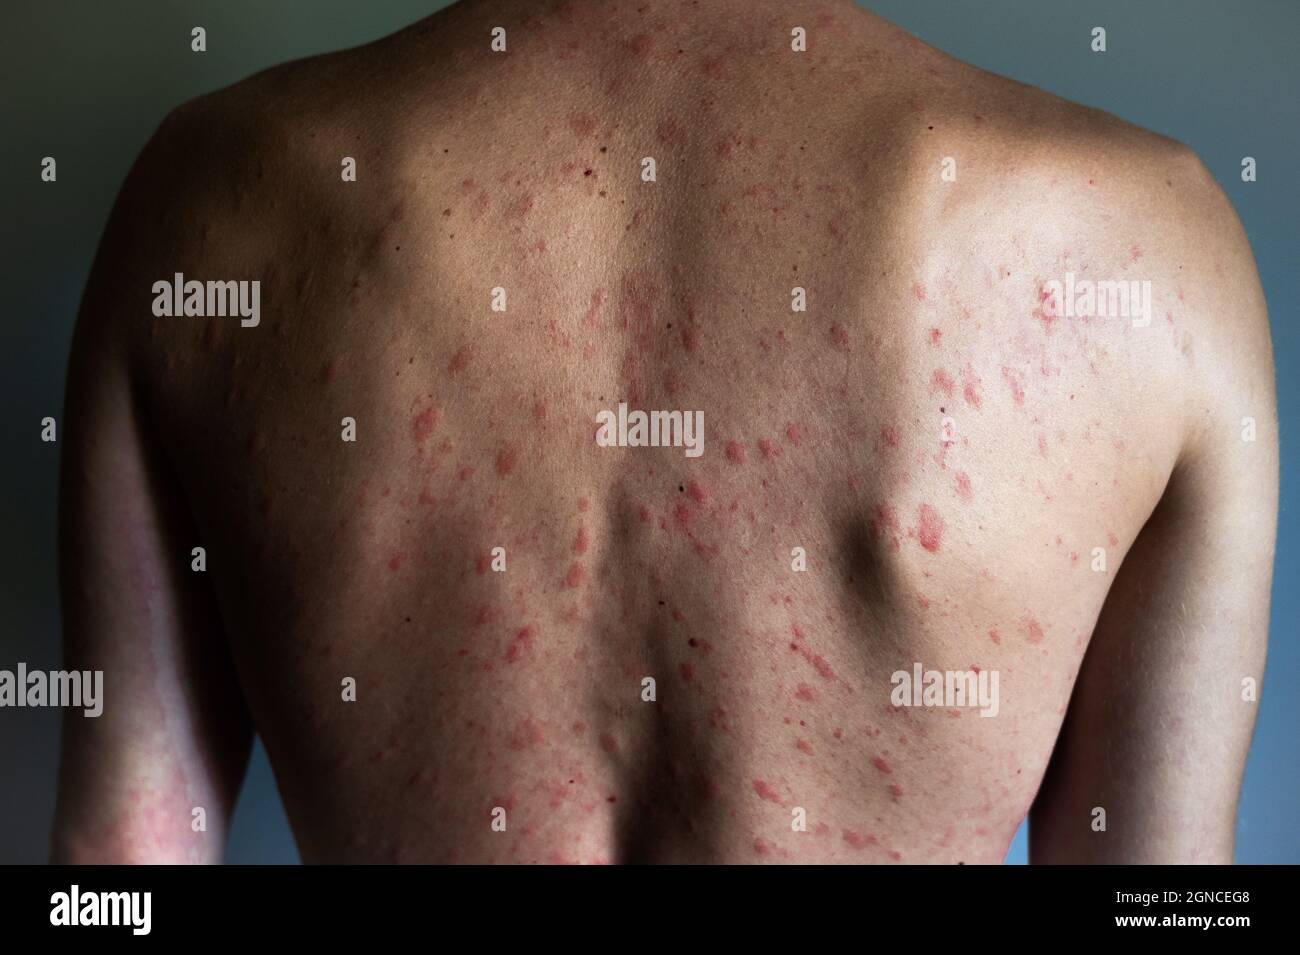 Concept d'allergie. L'homme souffre d'une irritation de la peau ...